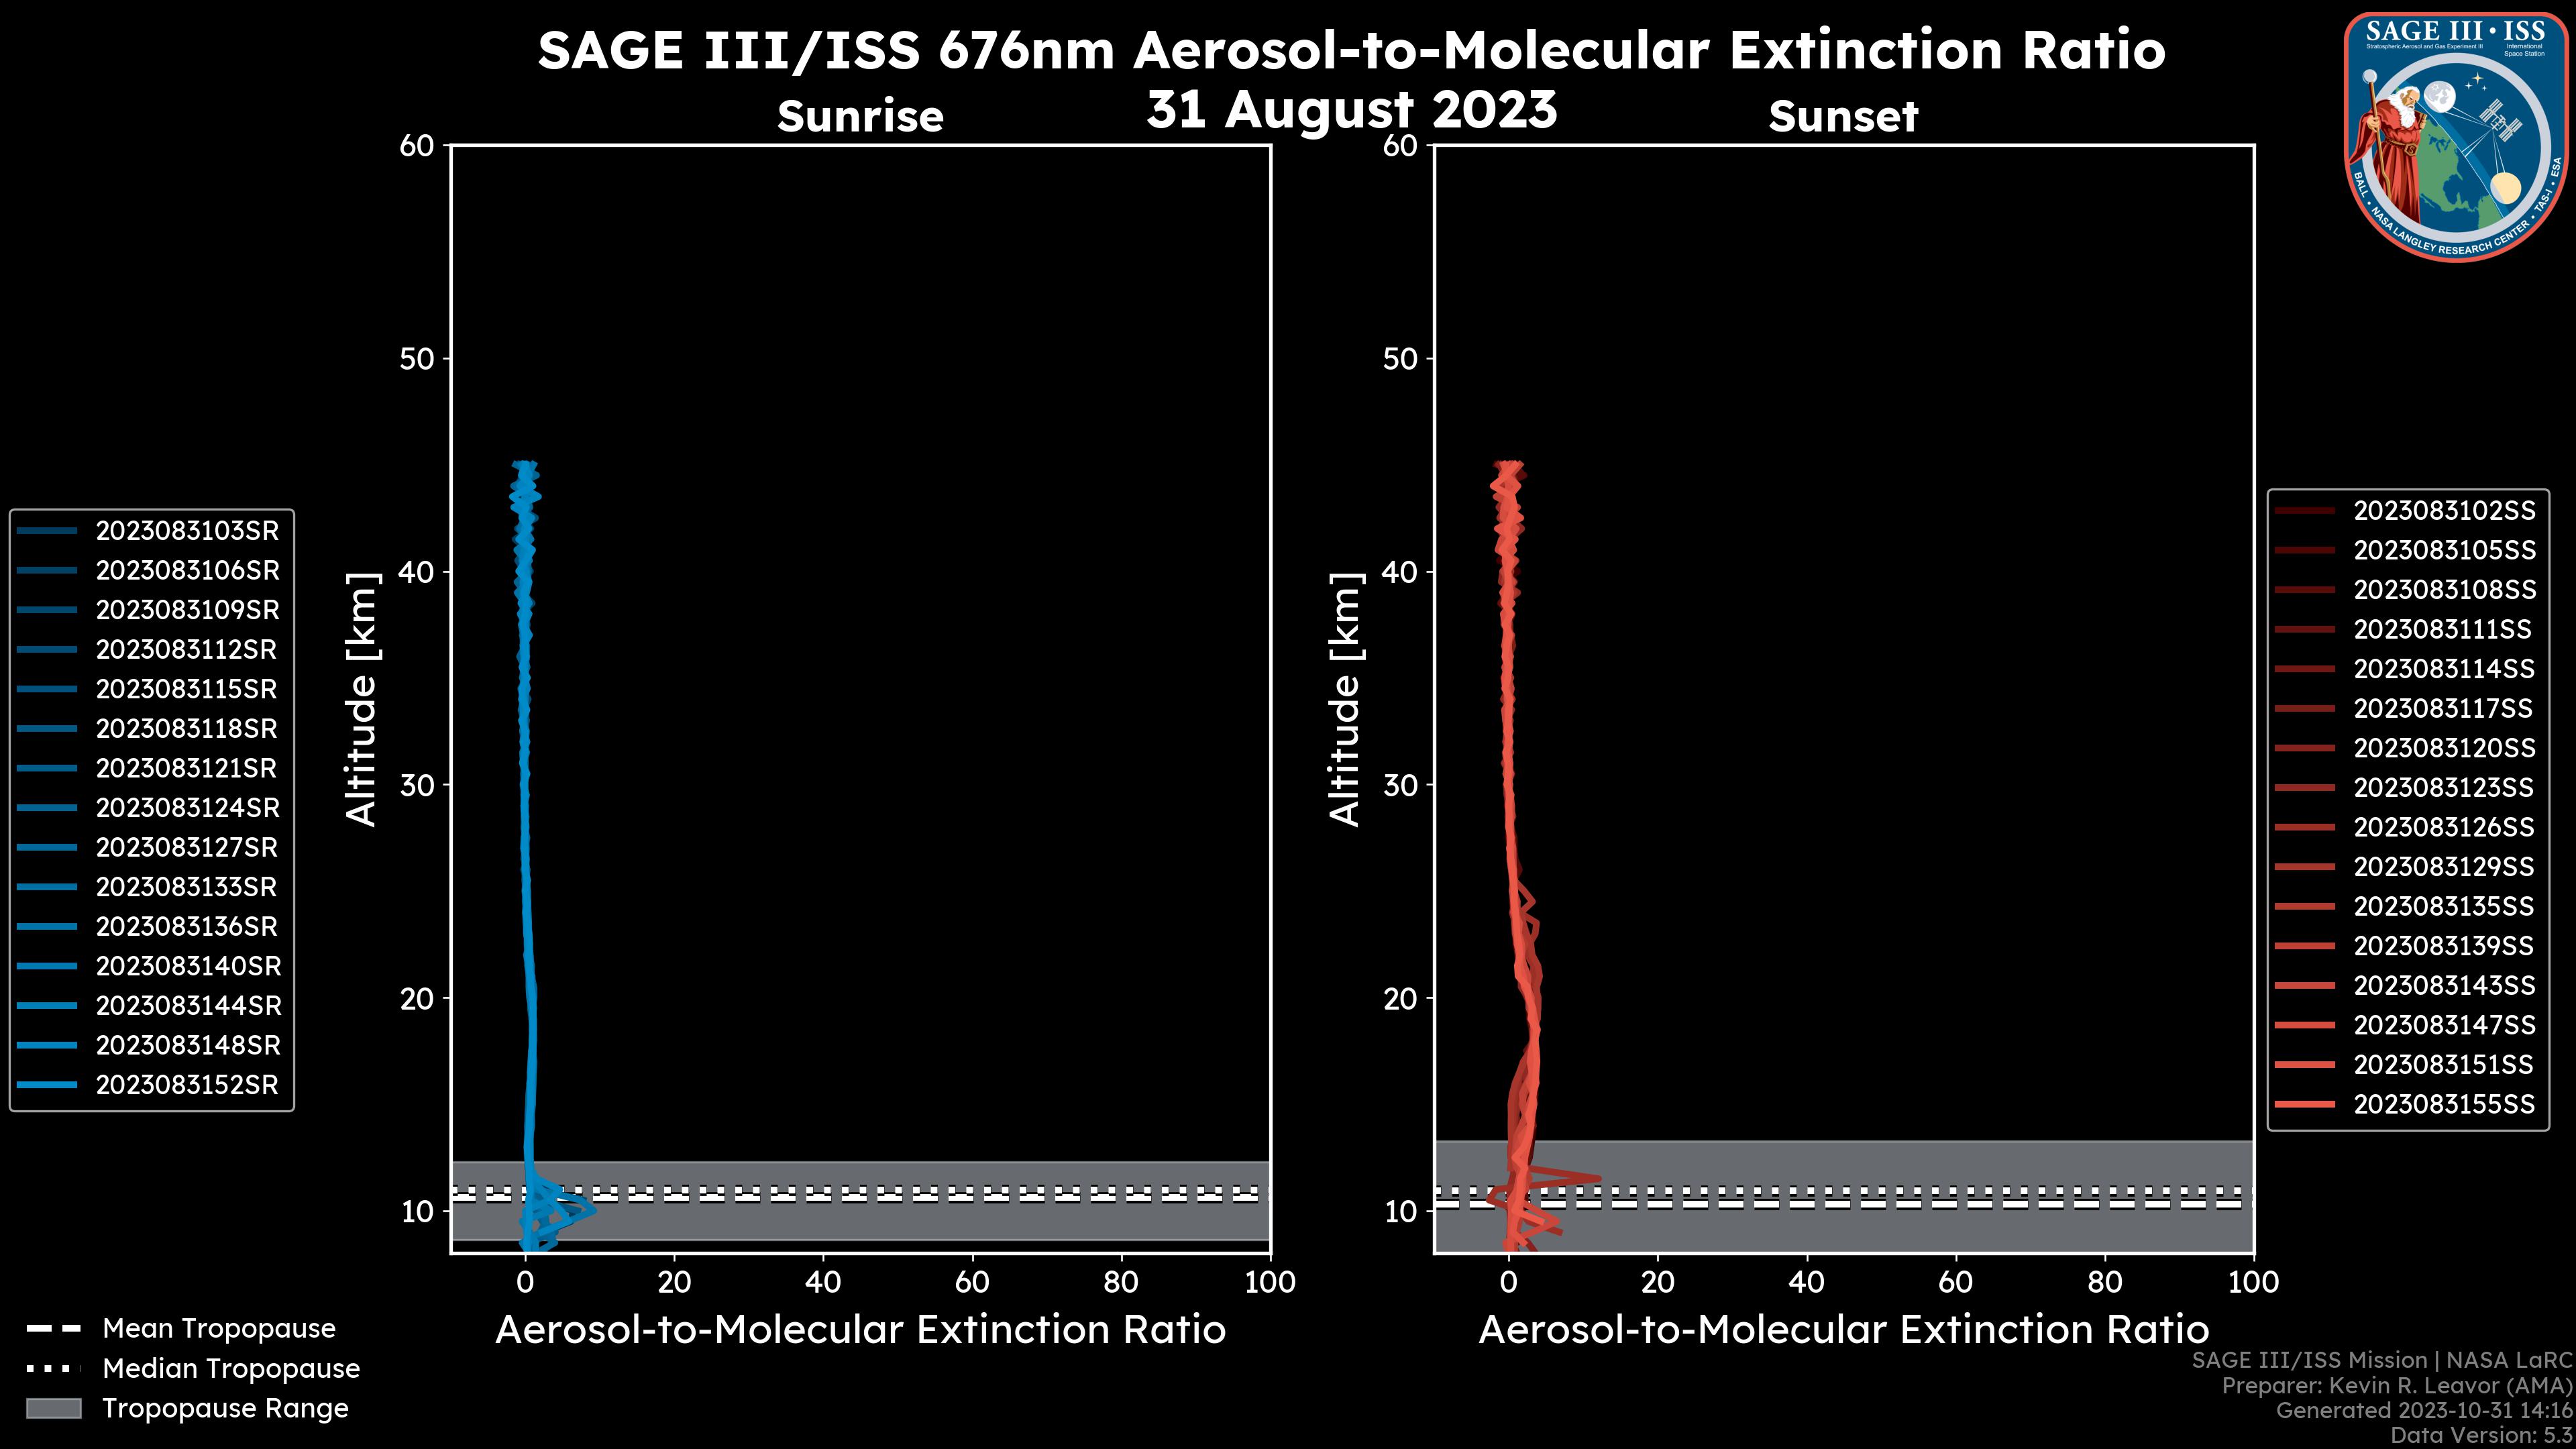 676nm Aerosol-to-Molecular Extinction Ratio